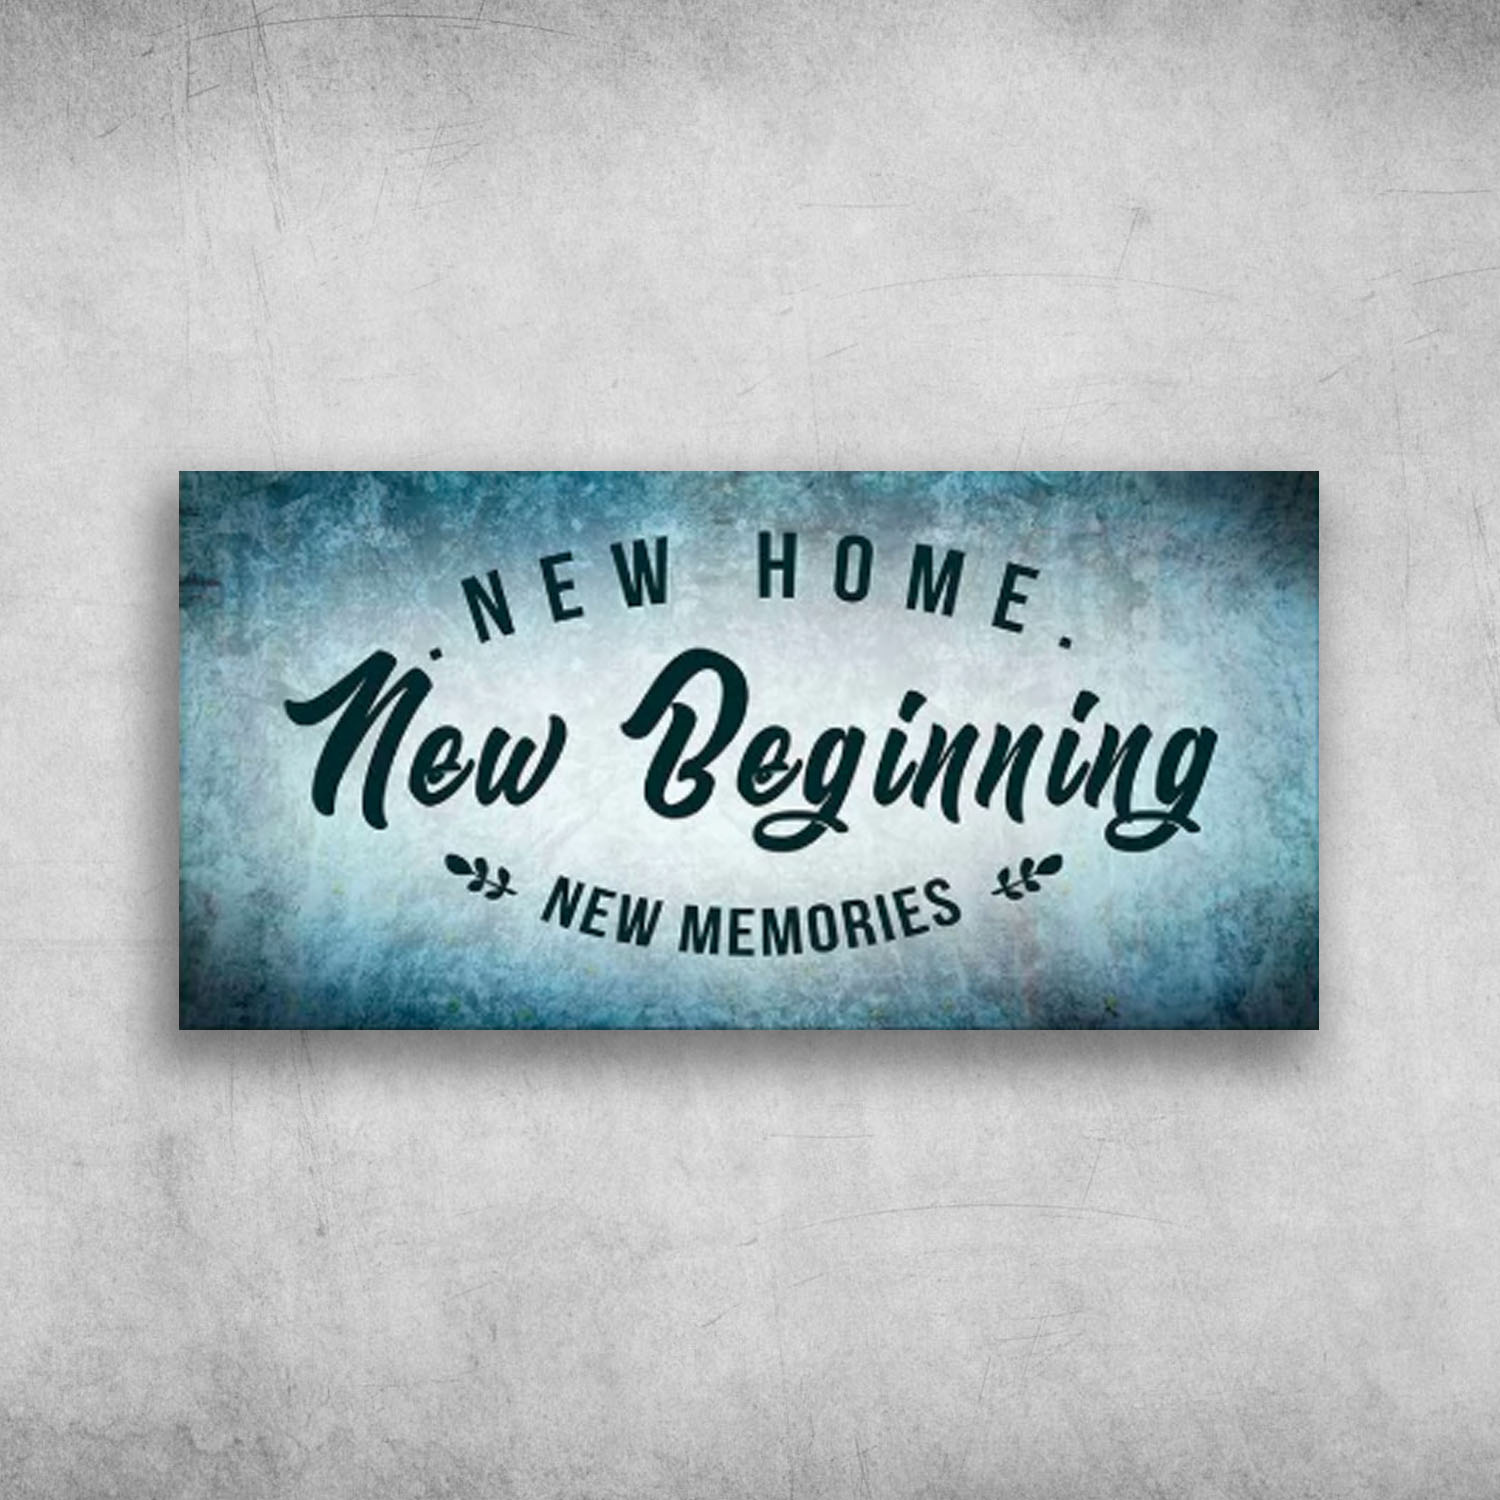 New Home New Beginning New Memories